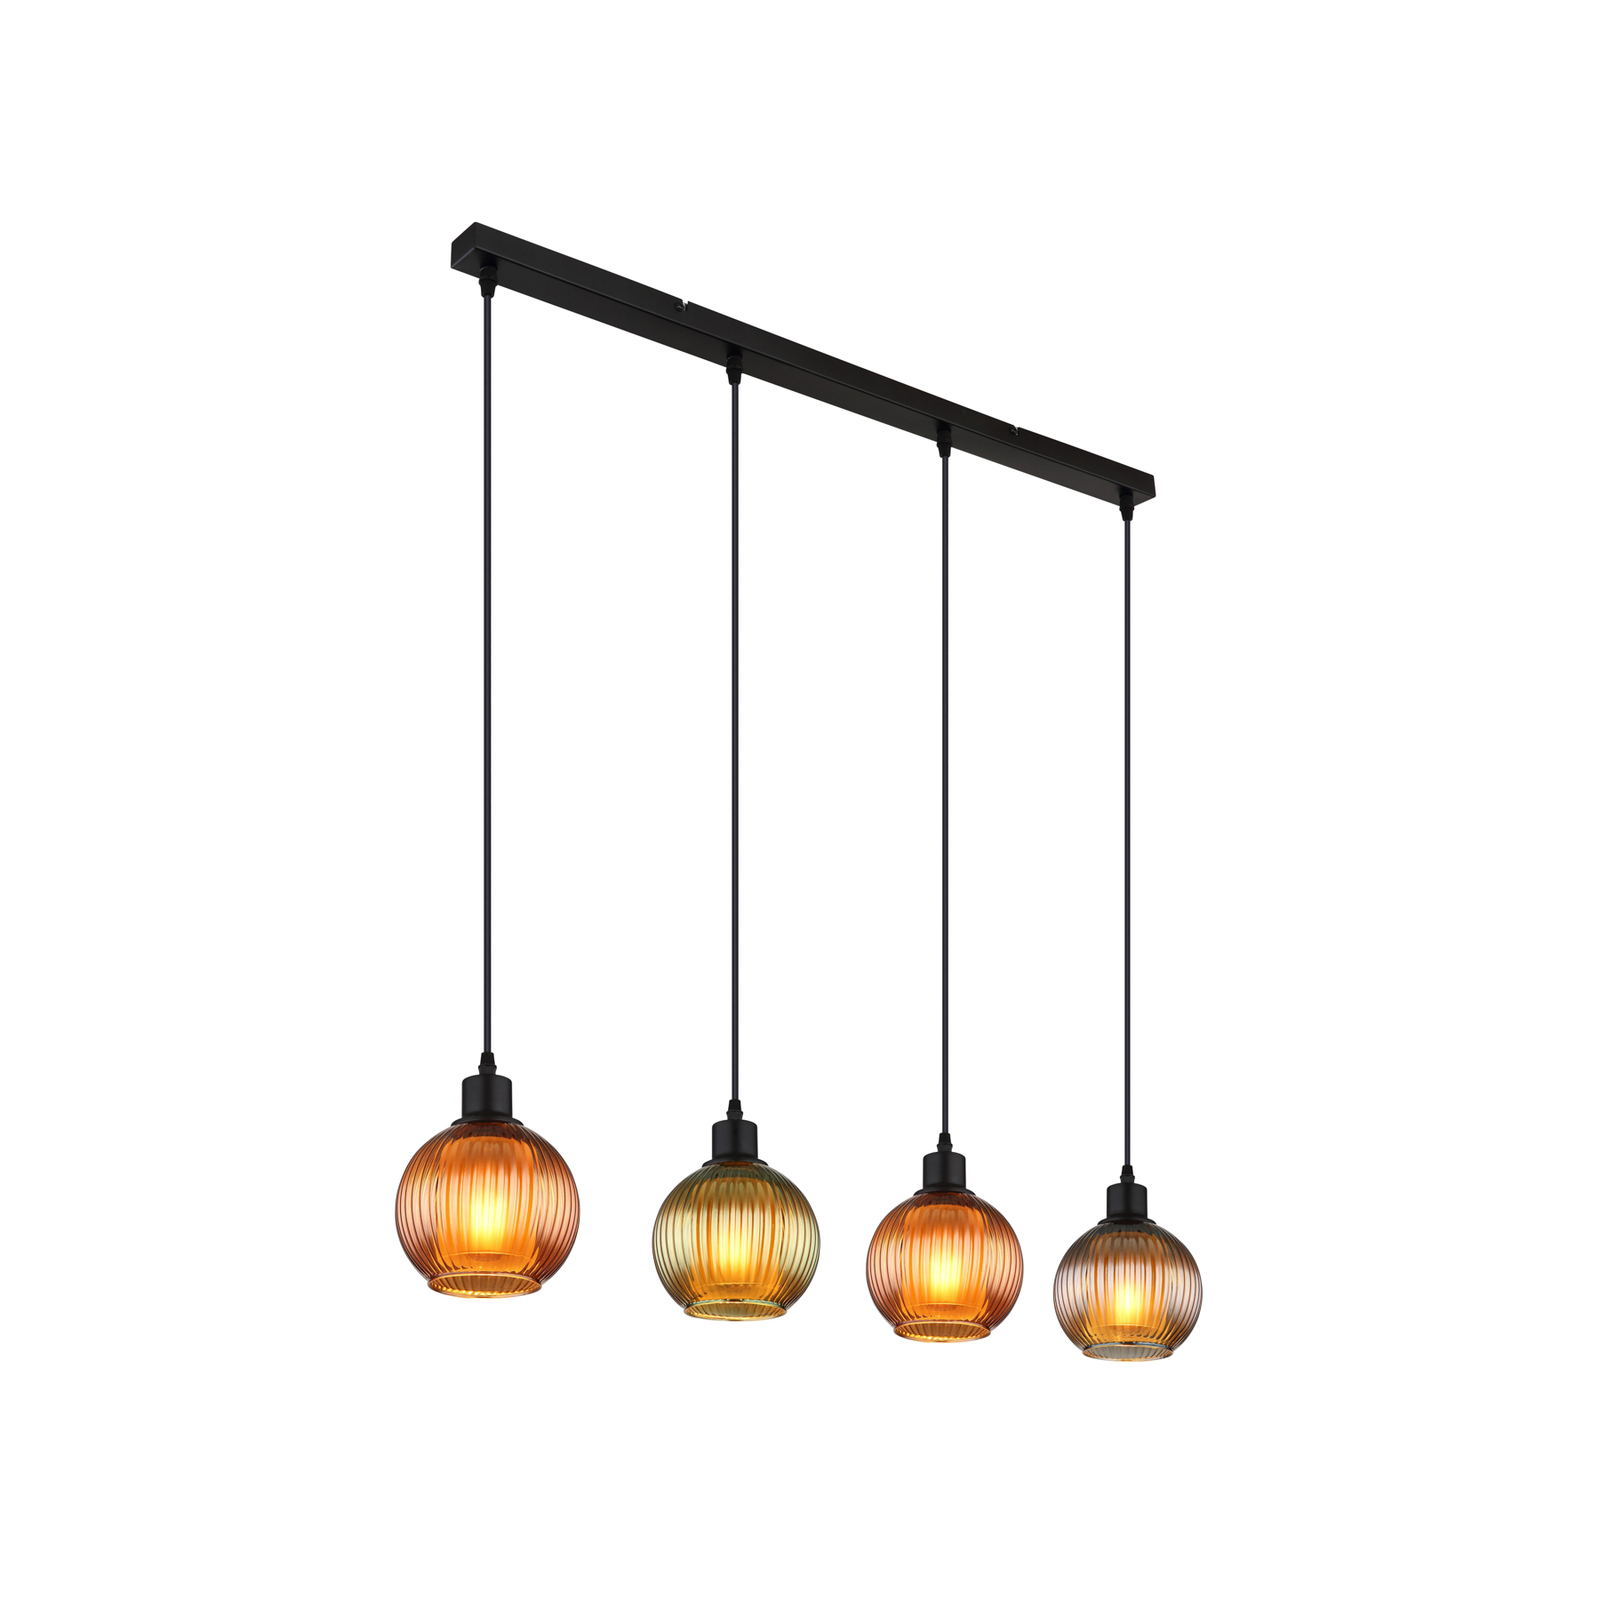 Zumba viseća lampa, zelena/brončana/petrol, 90 cm, 4 žarulje, staklo